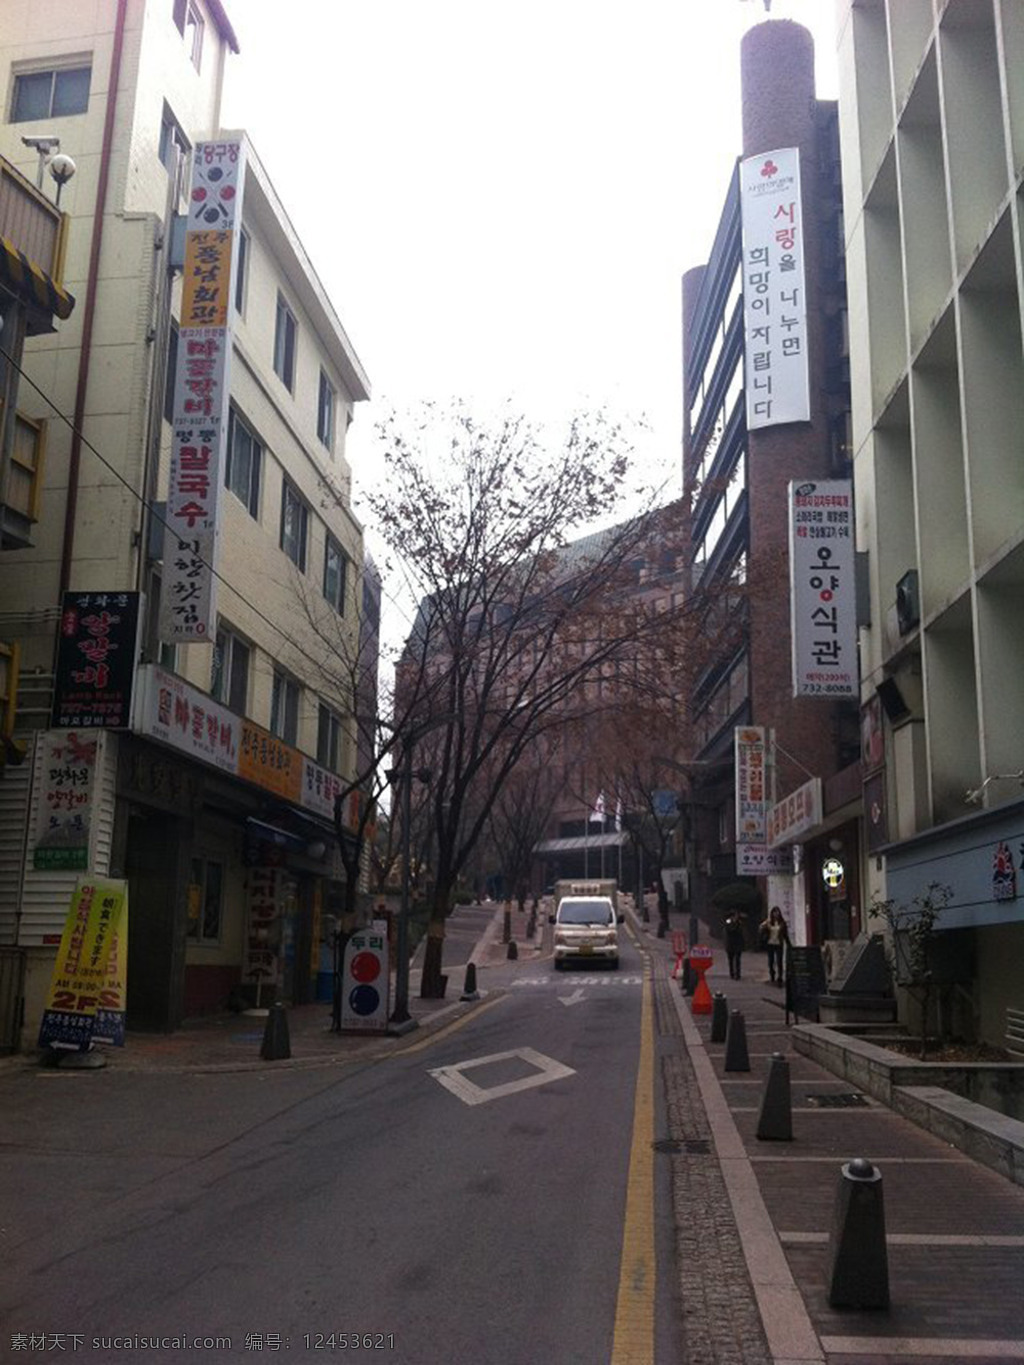 韩国的街道 韩国 首尔 街道 建筑 楼 旅游摄影 国外旅游